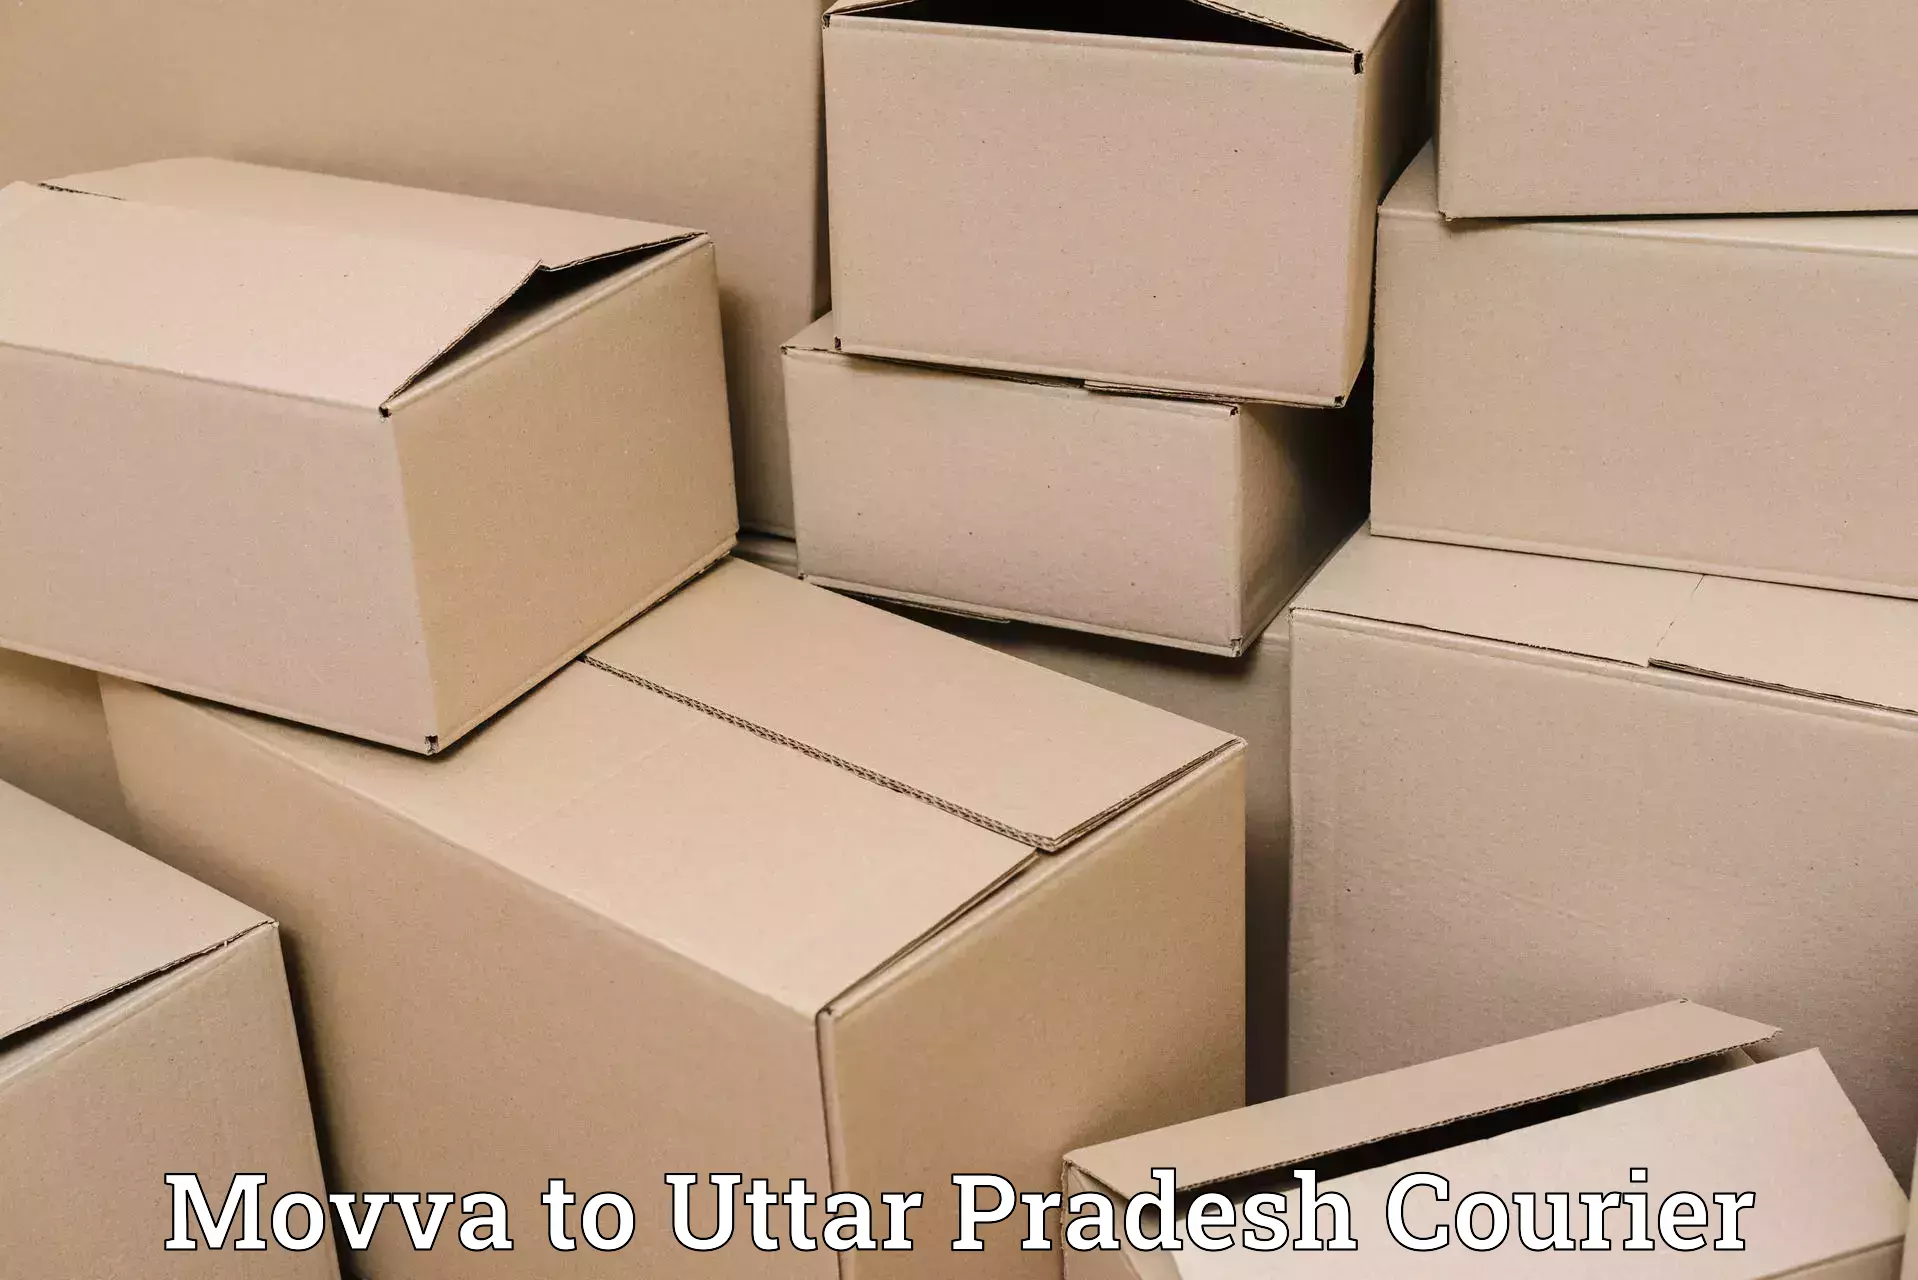 Next day courier Movva to Siddharthnagar